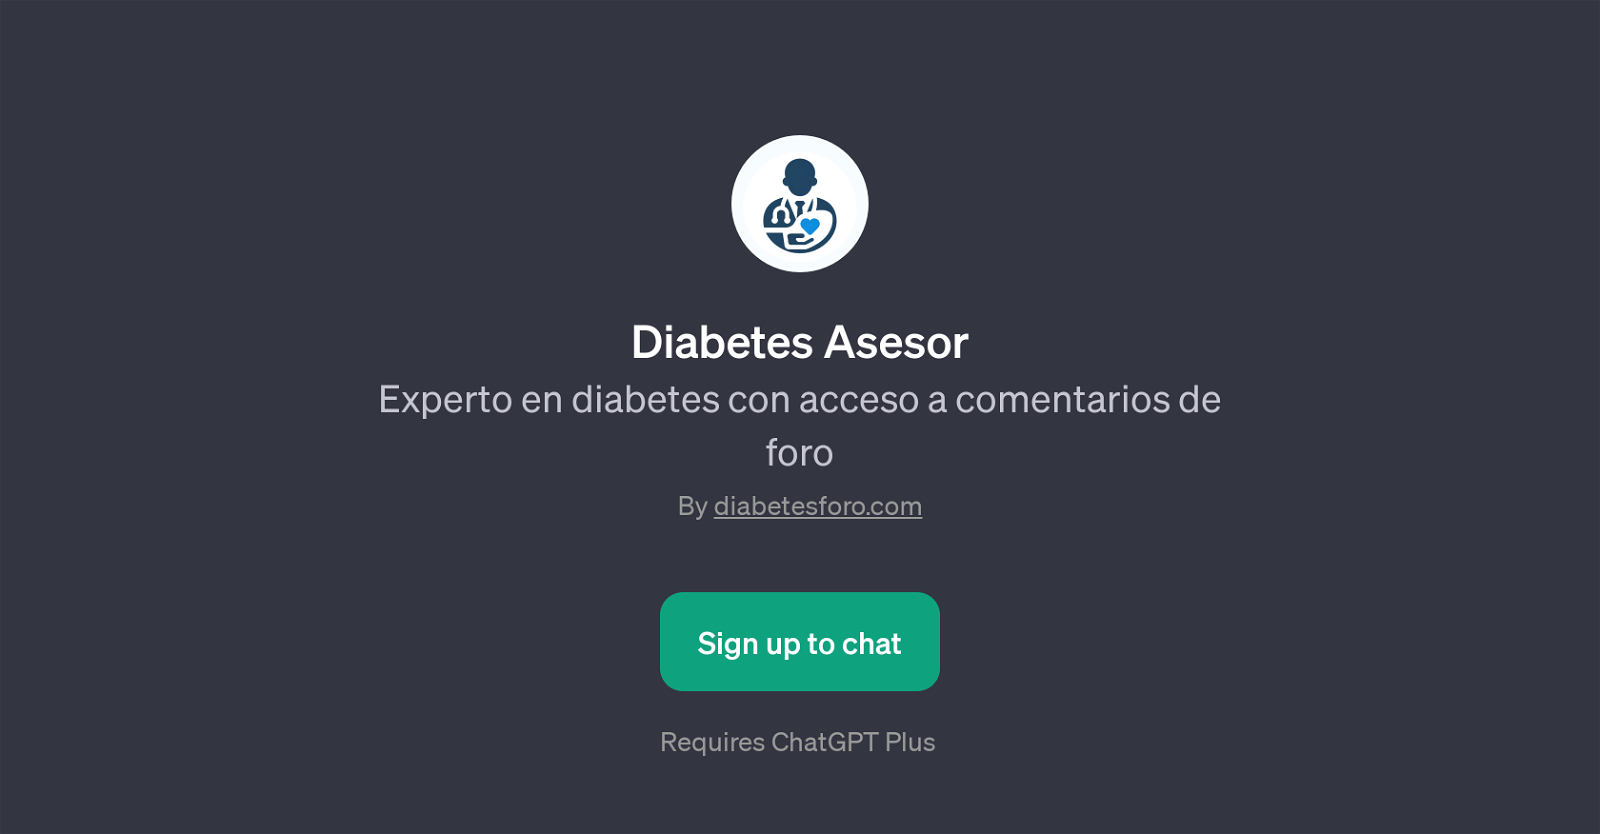 Diabetes Asesor website